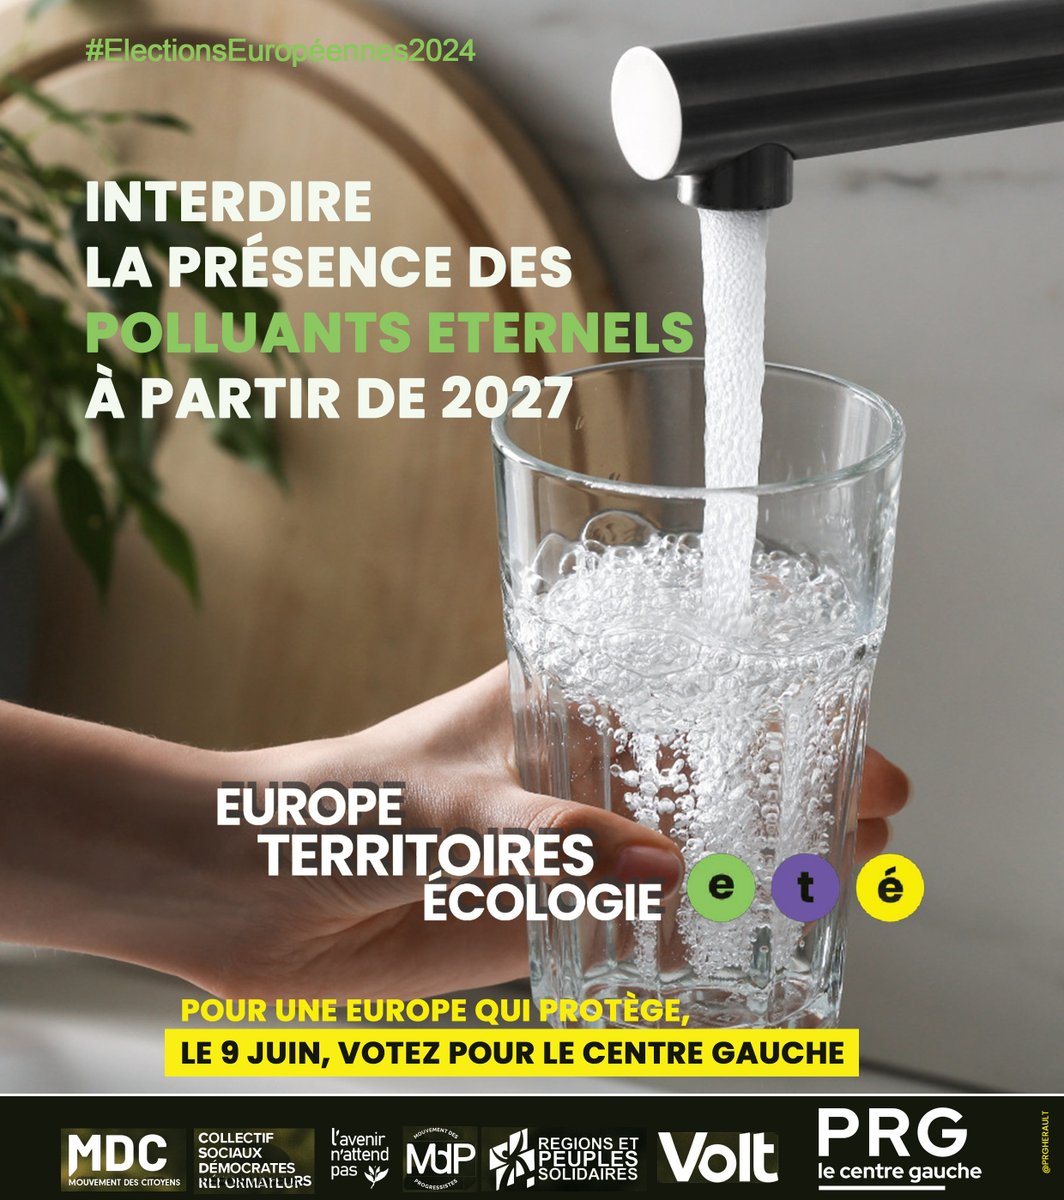 👉 Interdire la présence de polluants éternels ( #PFAS ) à partir de 2027. 
👉 le 9 juin, je vote la liste #EuropeTerritoiresEcologie @ETE_2024 menée par @Lacroix_PRG 🟡🟢🟣

#ÉlectionsEuropéennes2024 @PartiRadicalG #Sante